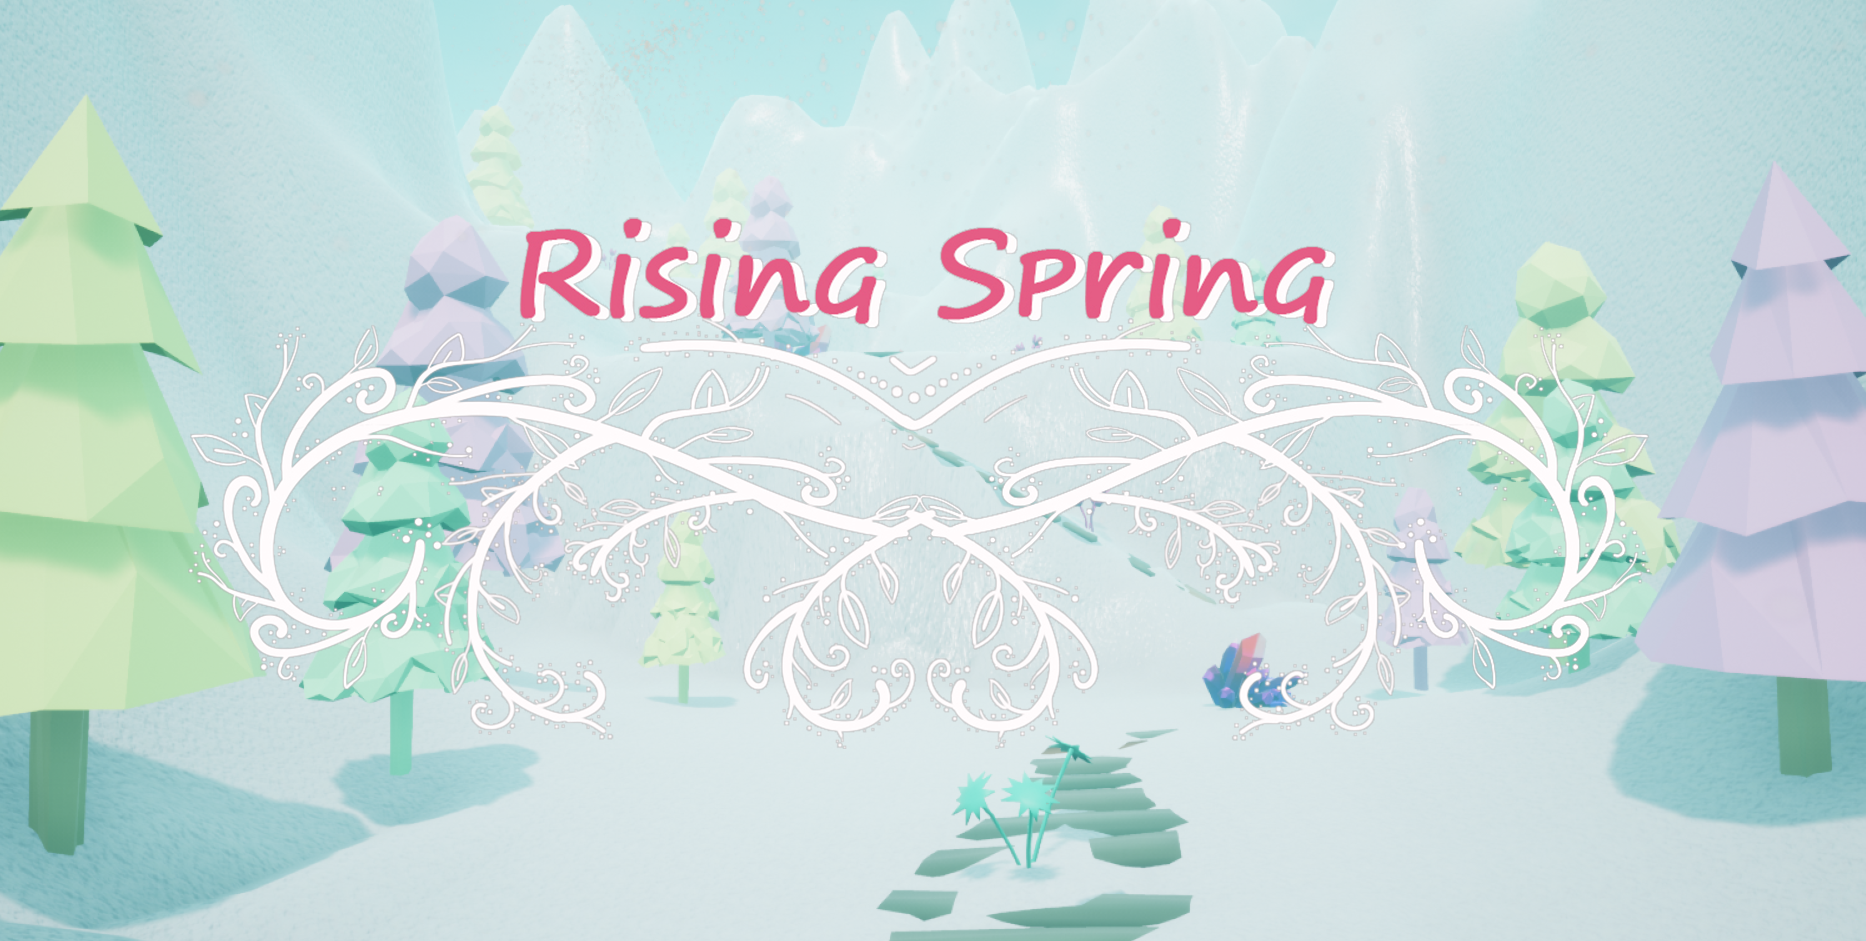 Rising Spring